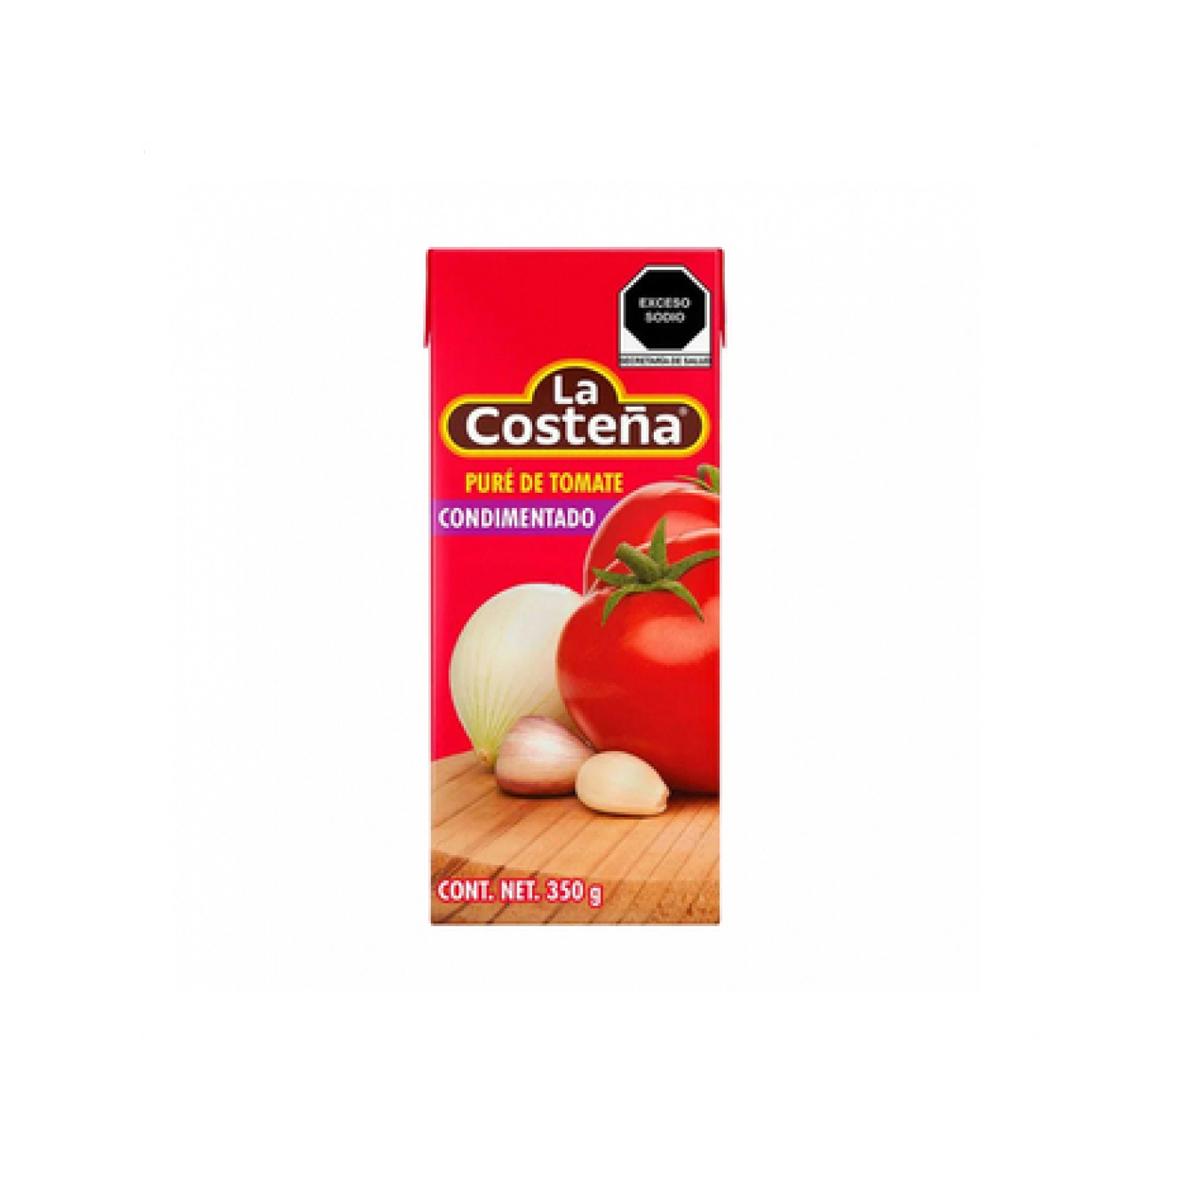 Pure de tomate condimentado La Costeña (350 g / 12.34 oz)